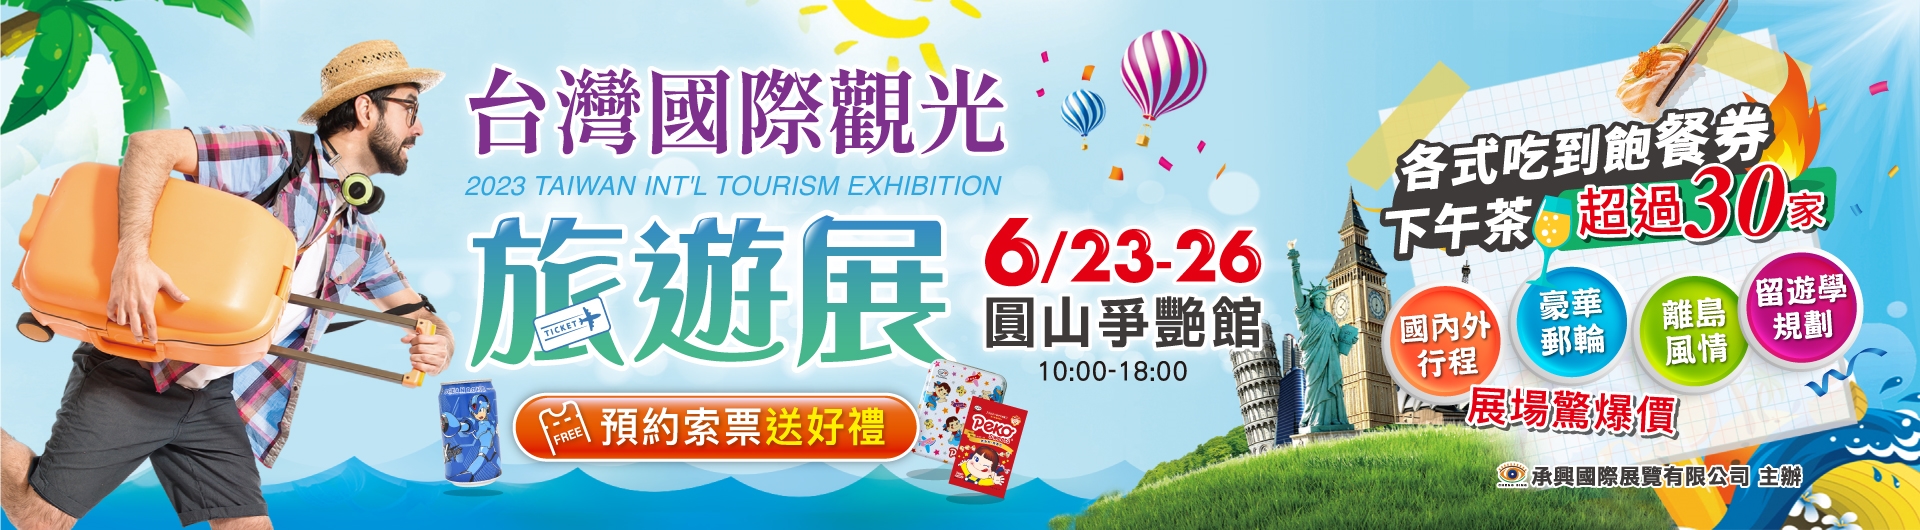 台灣國際觀光旅展